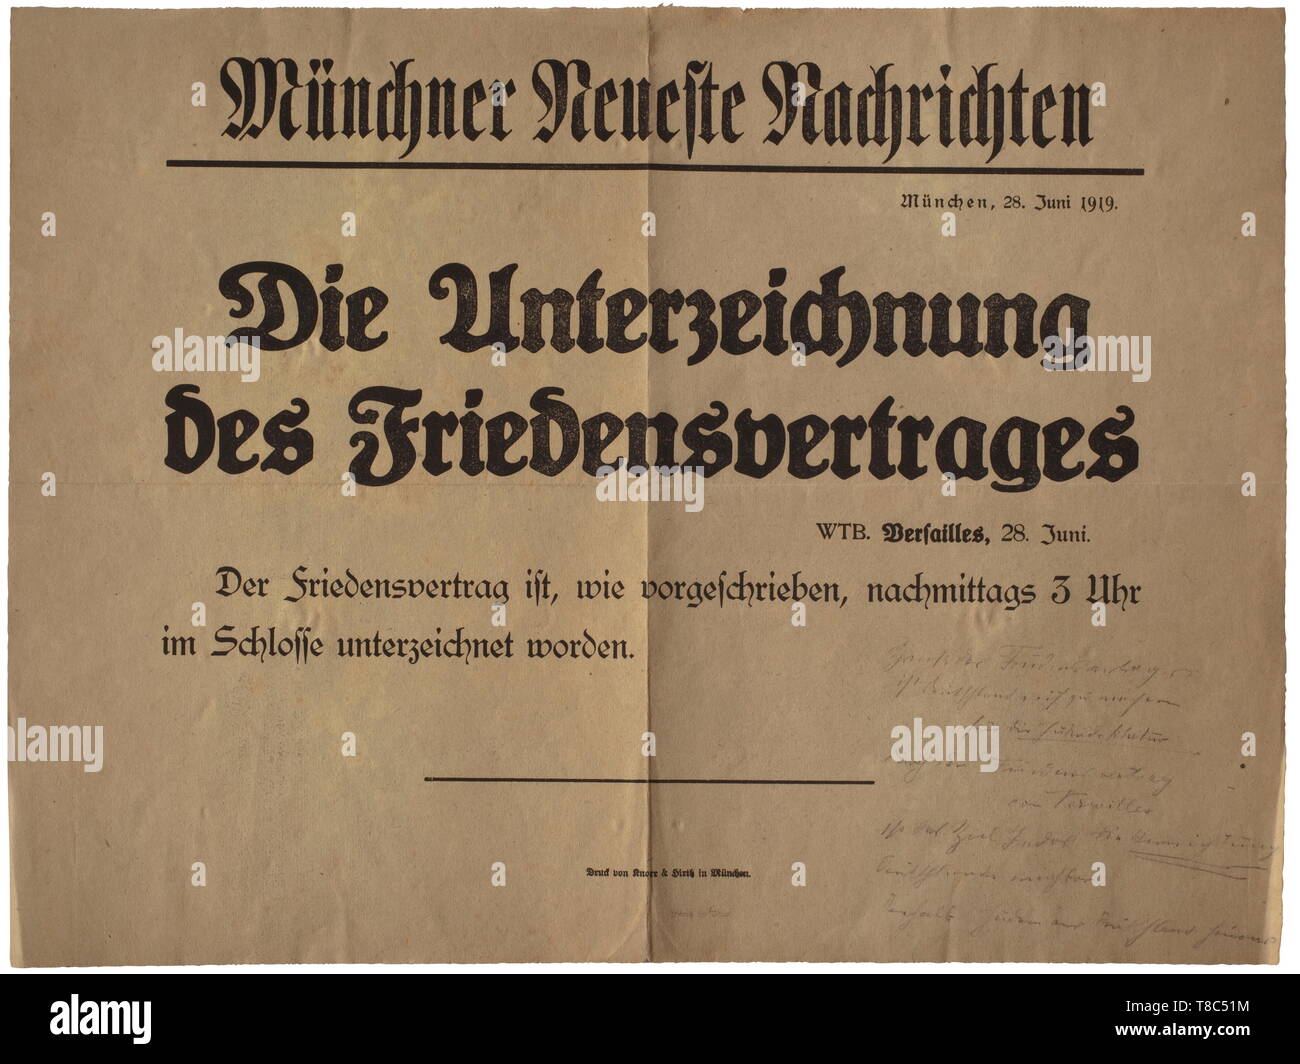 - Une gamme complète d'hiver Anny dossier de Hitler sur le Traité de Versailles, la révolution de Munich 1918/19 etc. avec un poster de la 'Münchner Neueste Nachrichten" du 28 juin 1919 - (tr.) "le traité de paix a été signé dans le palais, comme le stipule, à 3 heures de l'après-midi avec Hitler's note manuscrite au crayon 'le traité de paix vise à préparer l'Allemagne pour le peuple juif, le traité de paix fait l'objectif de Juda - la destruction de l'Allemagne - possible. Les Juifs doivent donc quitter l'Allemagne.' également des affiches pour l'achat d'obligations de guerre dans la PREMIÈRE GUERRE MONDIALE, les appels t, Editorial-Use-seulement Banque D'Images